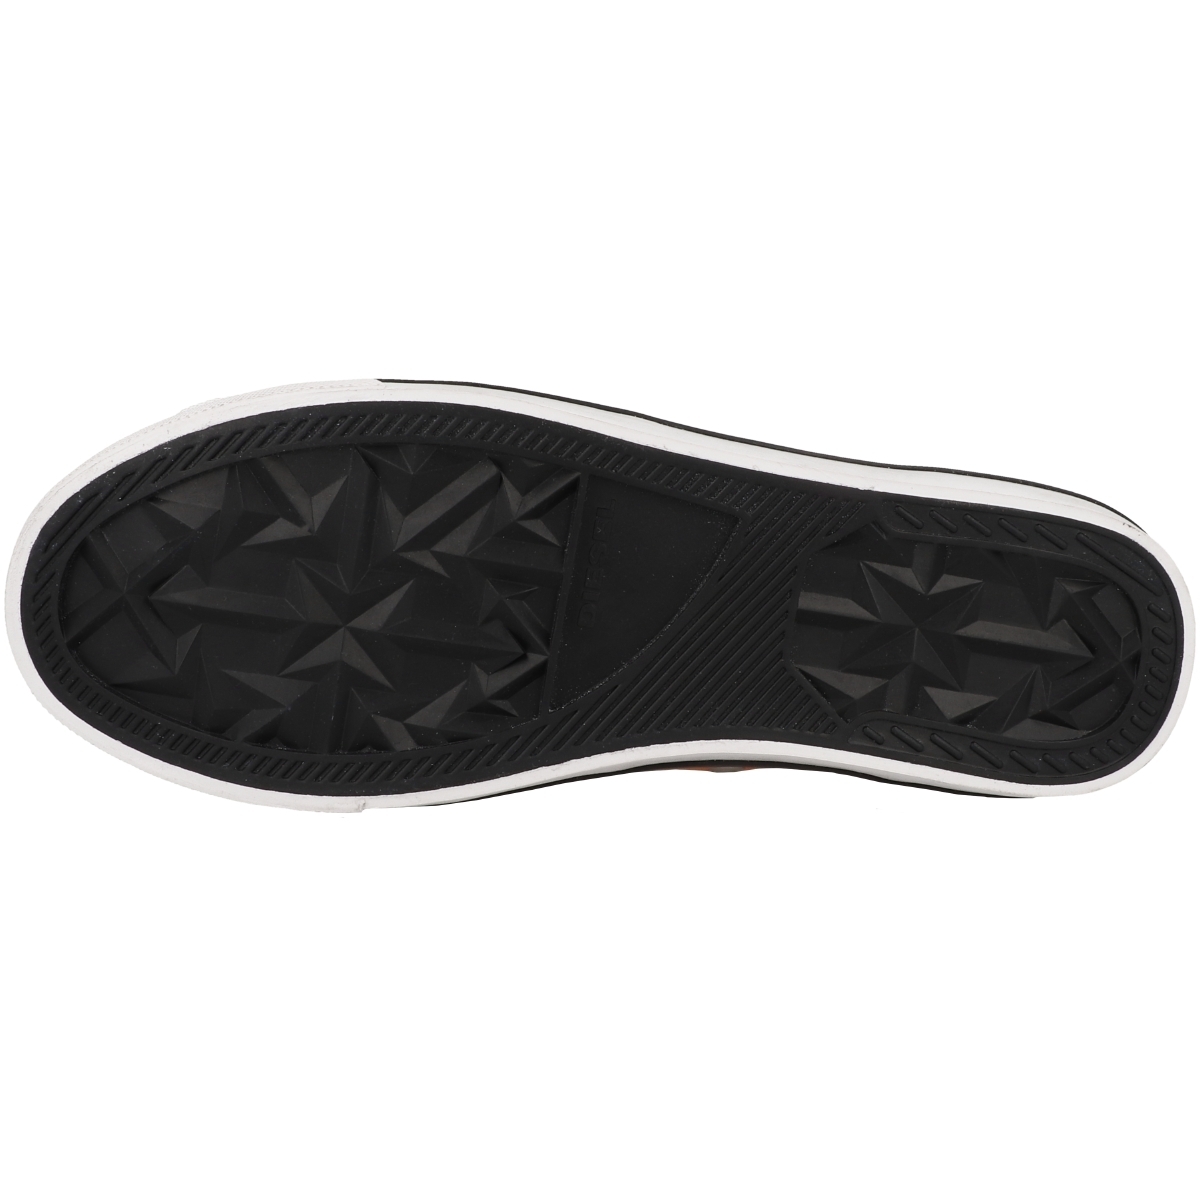 Diesel S-Athos Low Sneaker rot